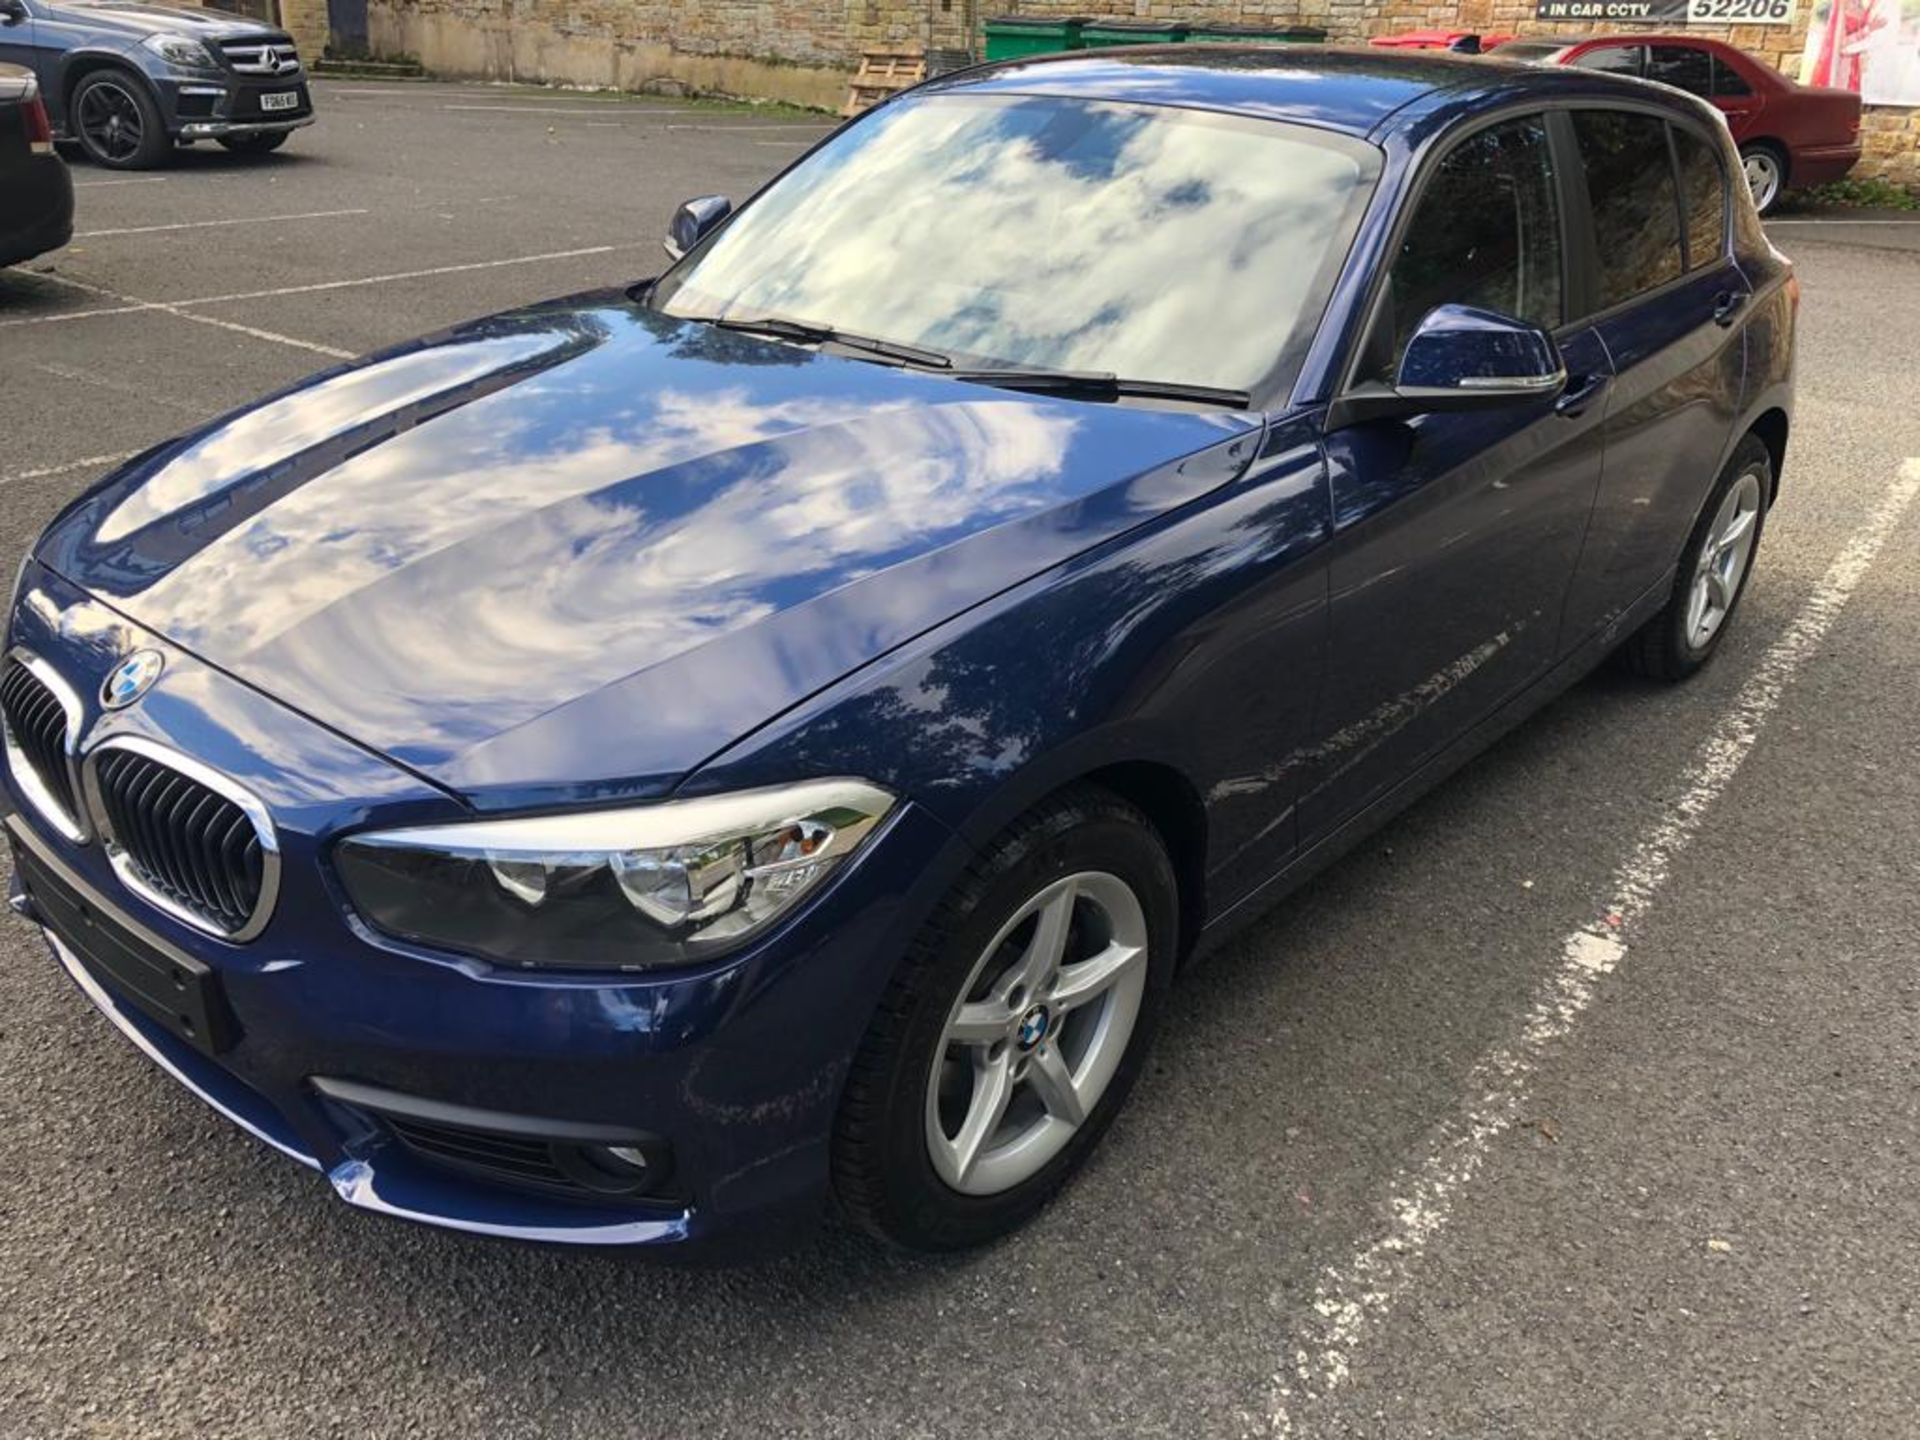 2018/67 REG BMW 118D SE AUTOMATIC BLUE DIESEL 5 DOOR HATCHBACK, SHOWING 0 FORMER KEEPERS *NO VAT* - Image 2 of 18